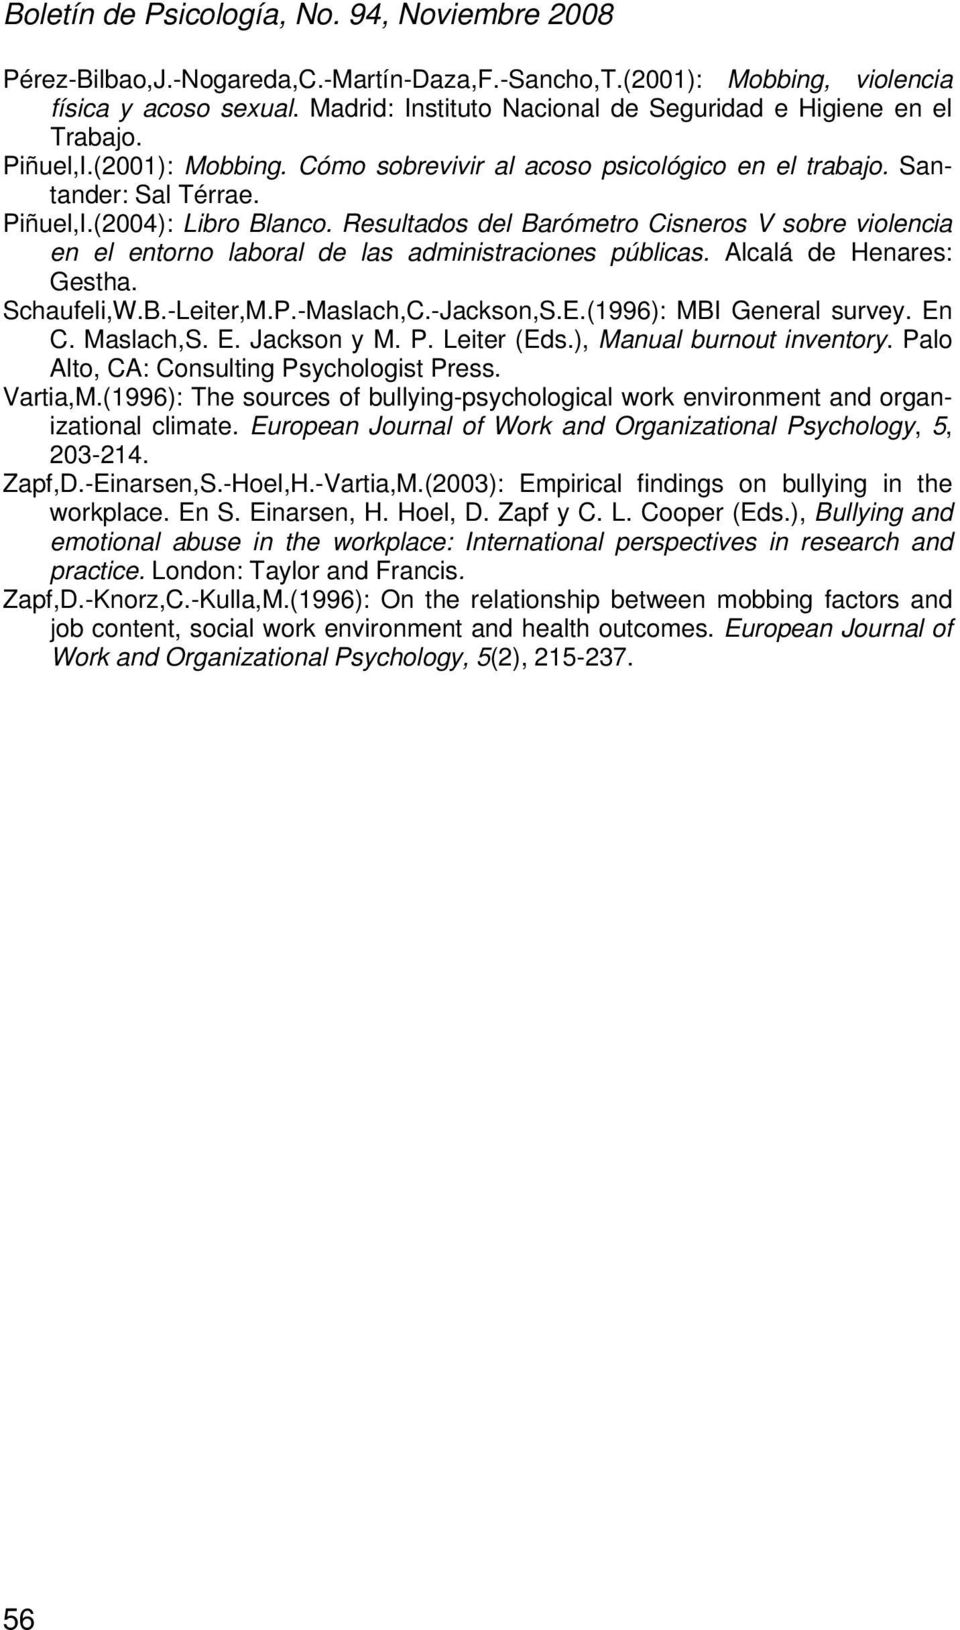 Schaufeli,W.B.-Leiter,M.P.-Maslach,C.-Jackson,S.E.(1996): MBI General survey. En C. Maslach,S. E. Jackson y M. P. Leiter (Eds.), Manual burnout inventory. Palo Alto, CA: Consulting Psychologist Press.